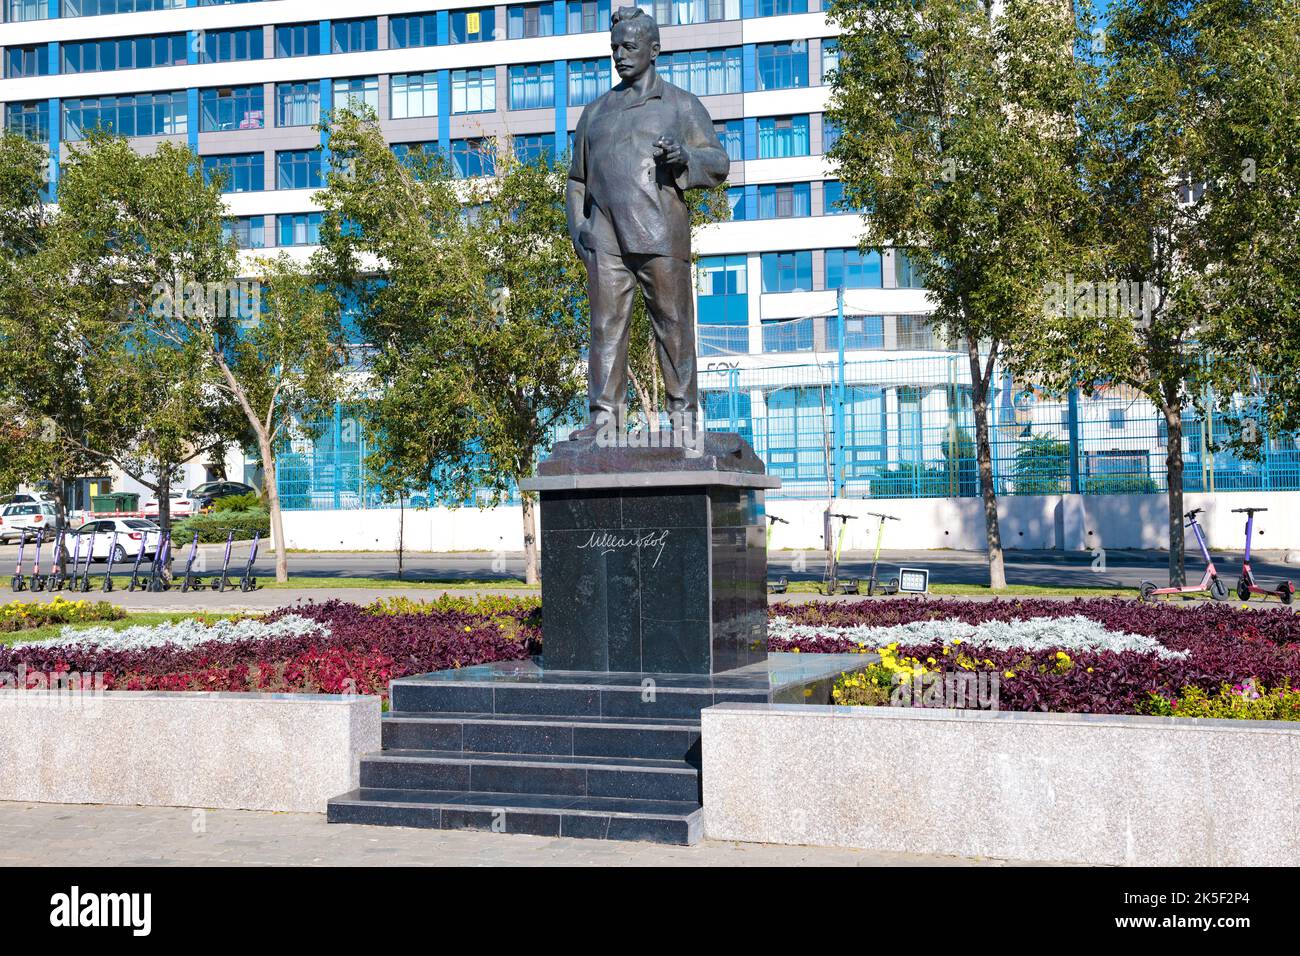 ROSTOW am DON, RUSSLAND - 03. OKTOBER 2021: Denkmal für den sowjetischen Schriftsteller und Drehbuchautor Michail Scholochow an einem sonnigen Tag Stockfoto